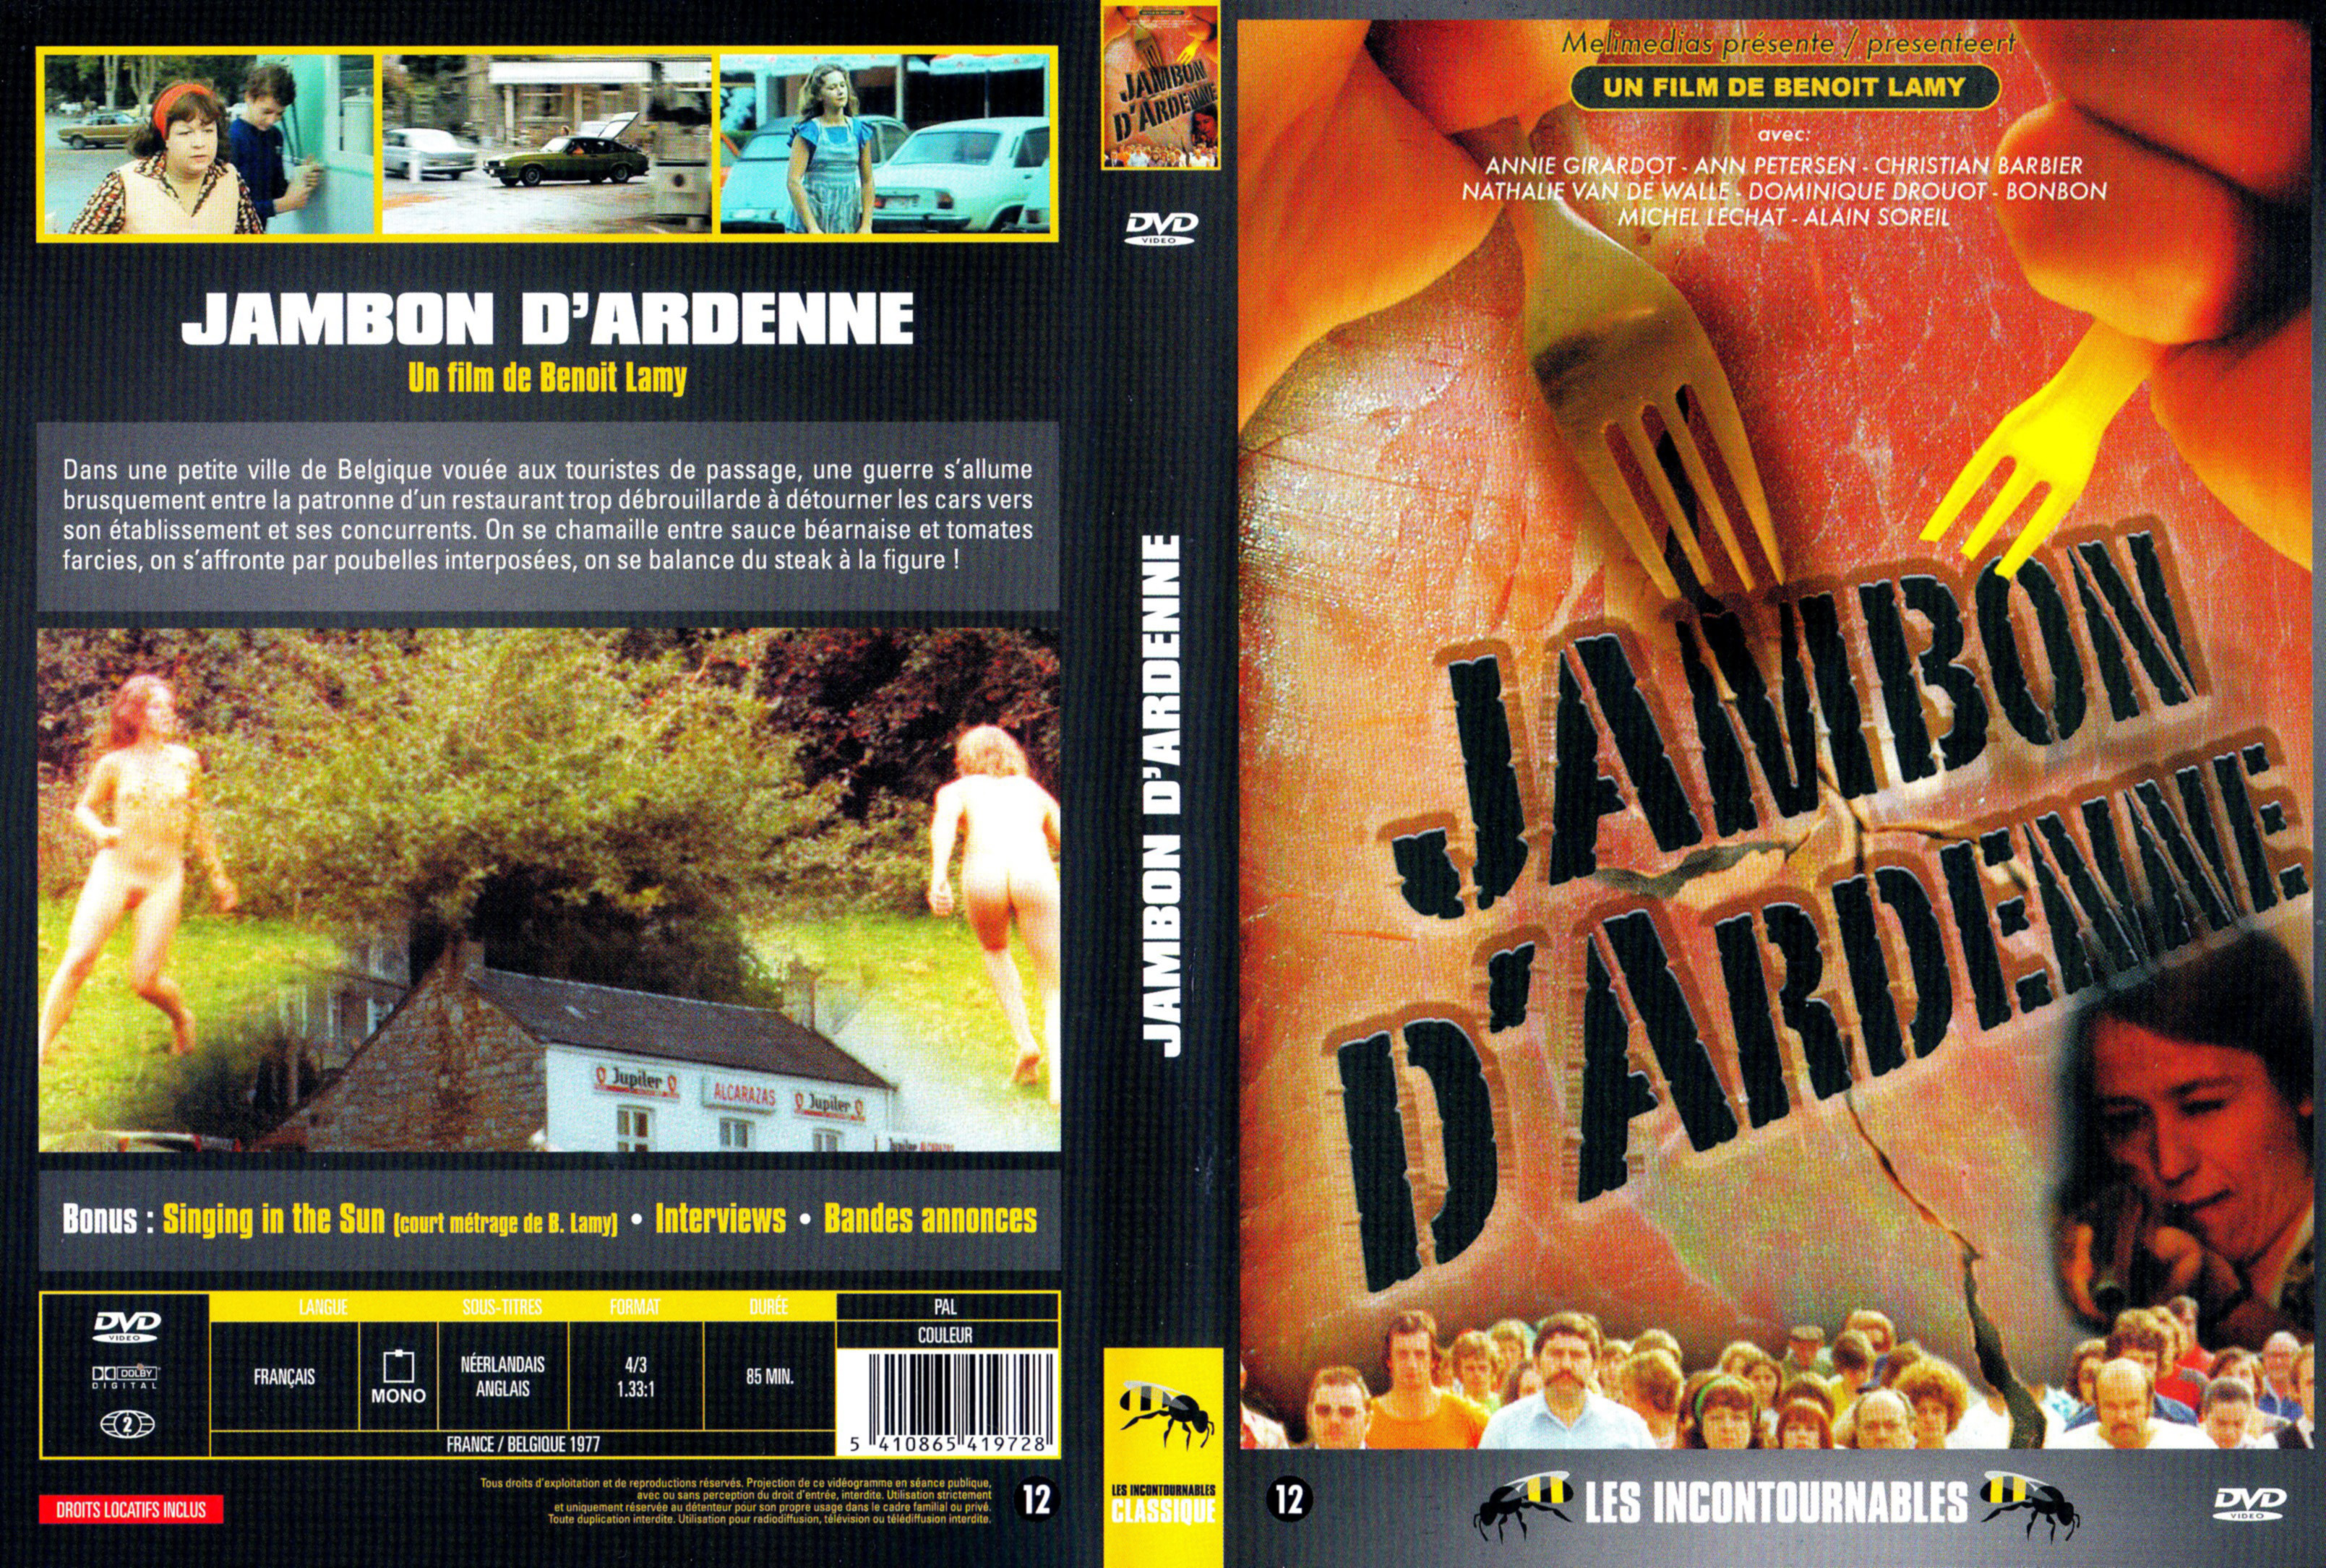 Jaquette DVD Jambon d